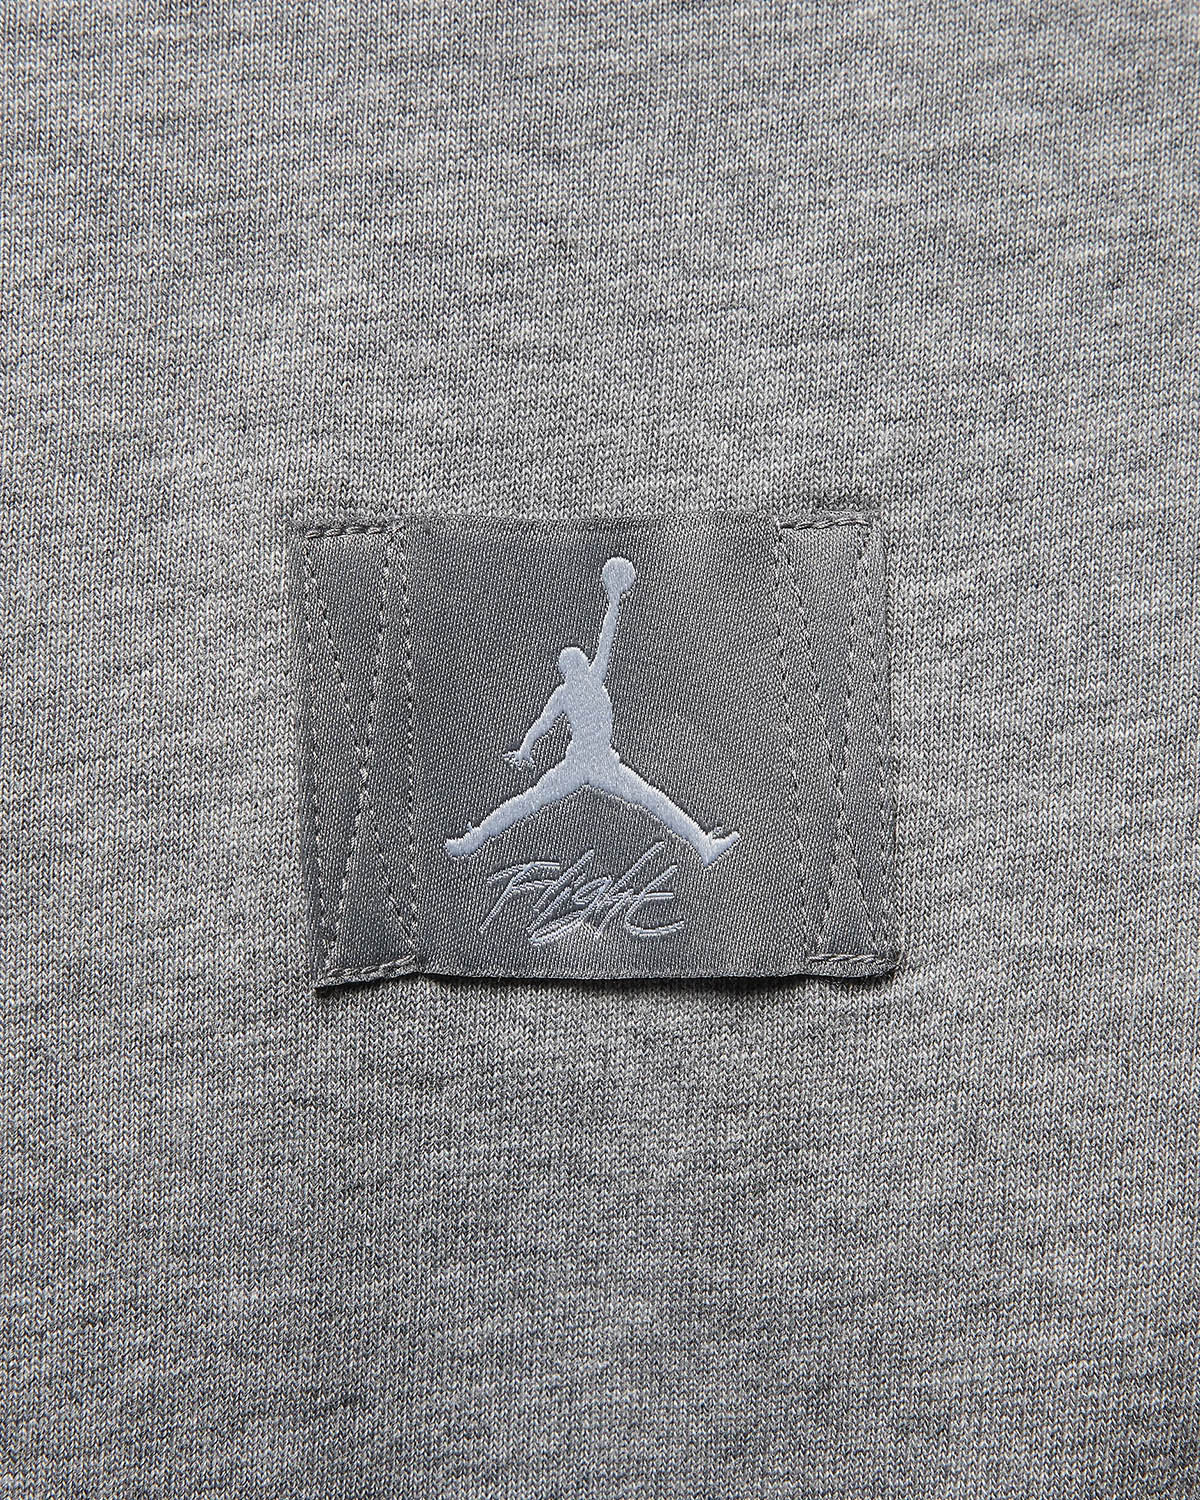 Air Jordan 4 Wet Cement Paris Olympics Shirt Match 3